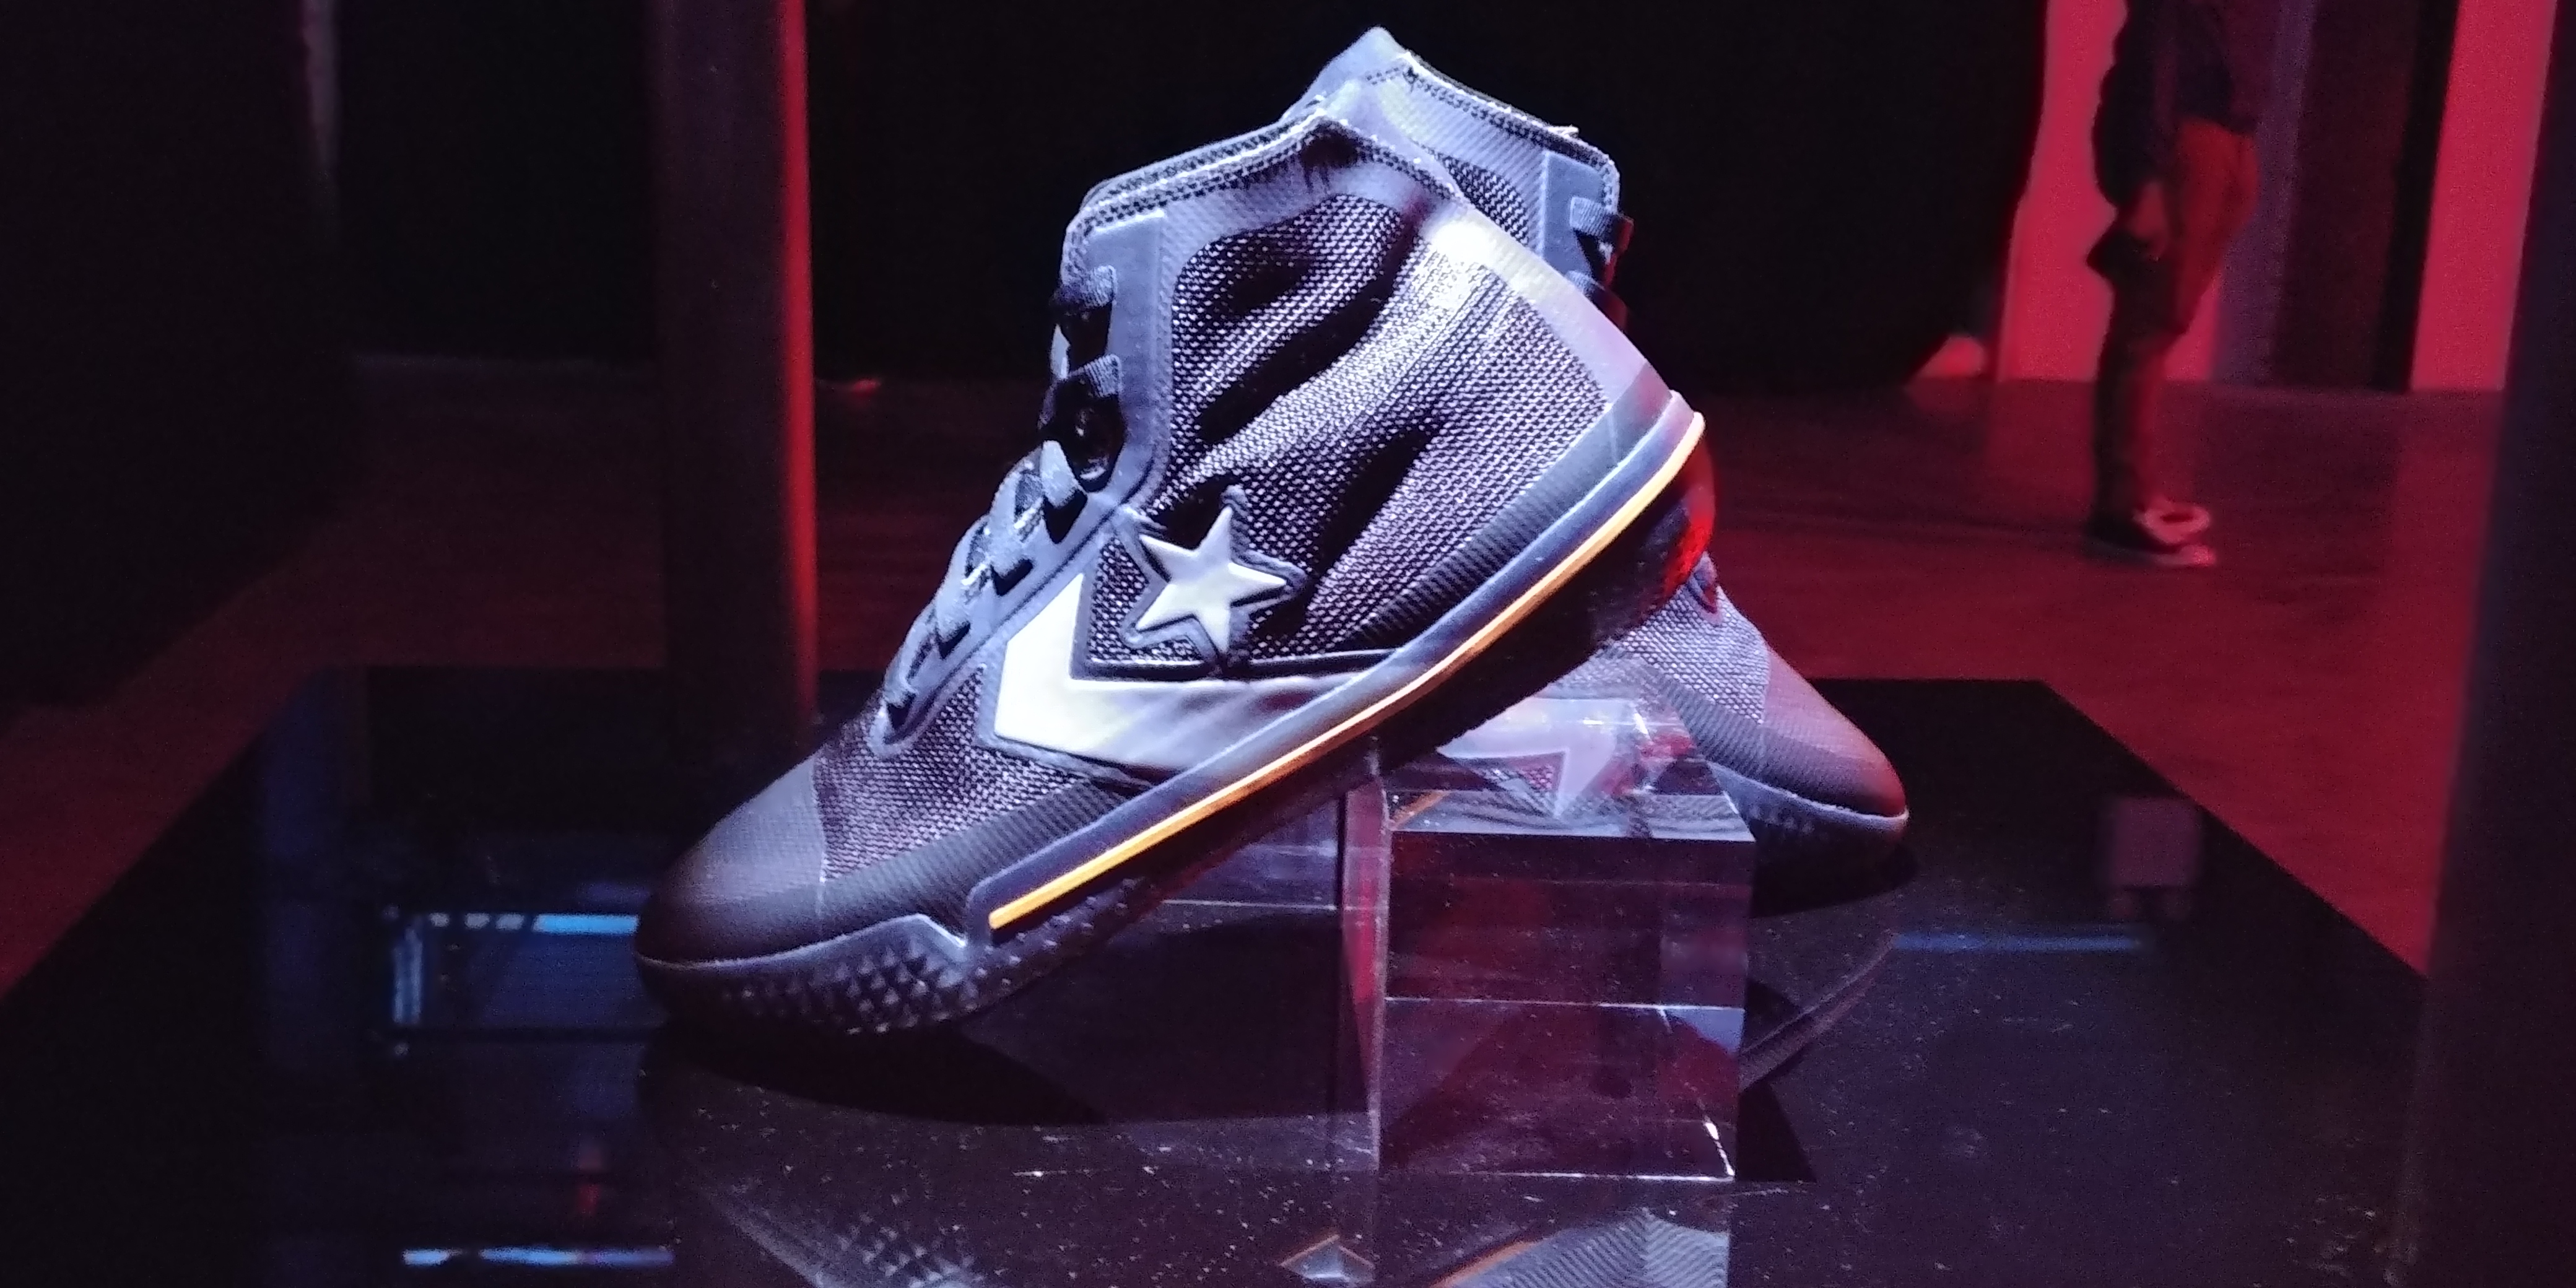 atómico función Física Converse releases its new basketball shoe, the All Star Pro BB